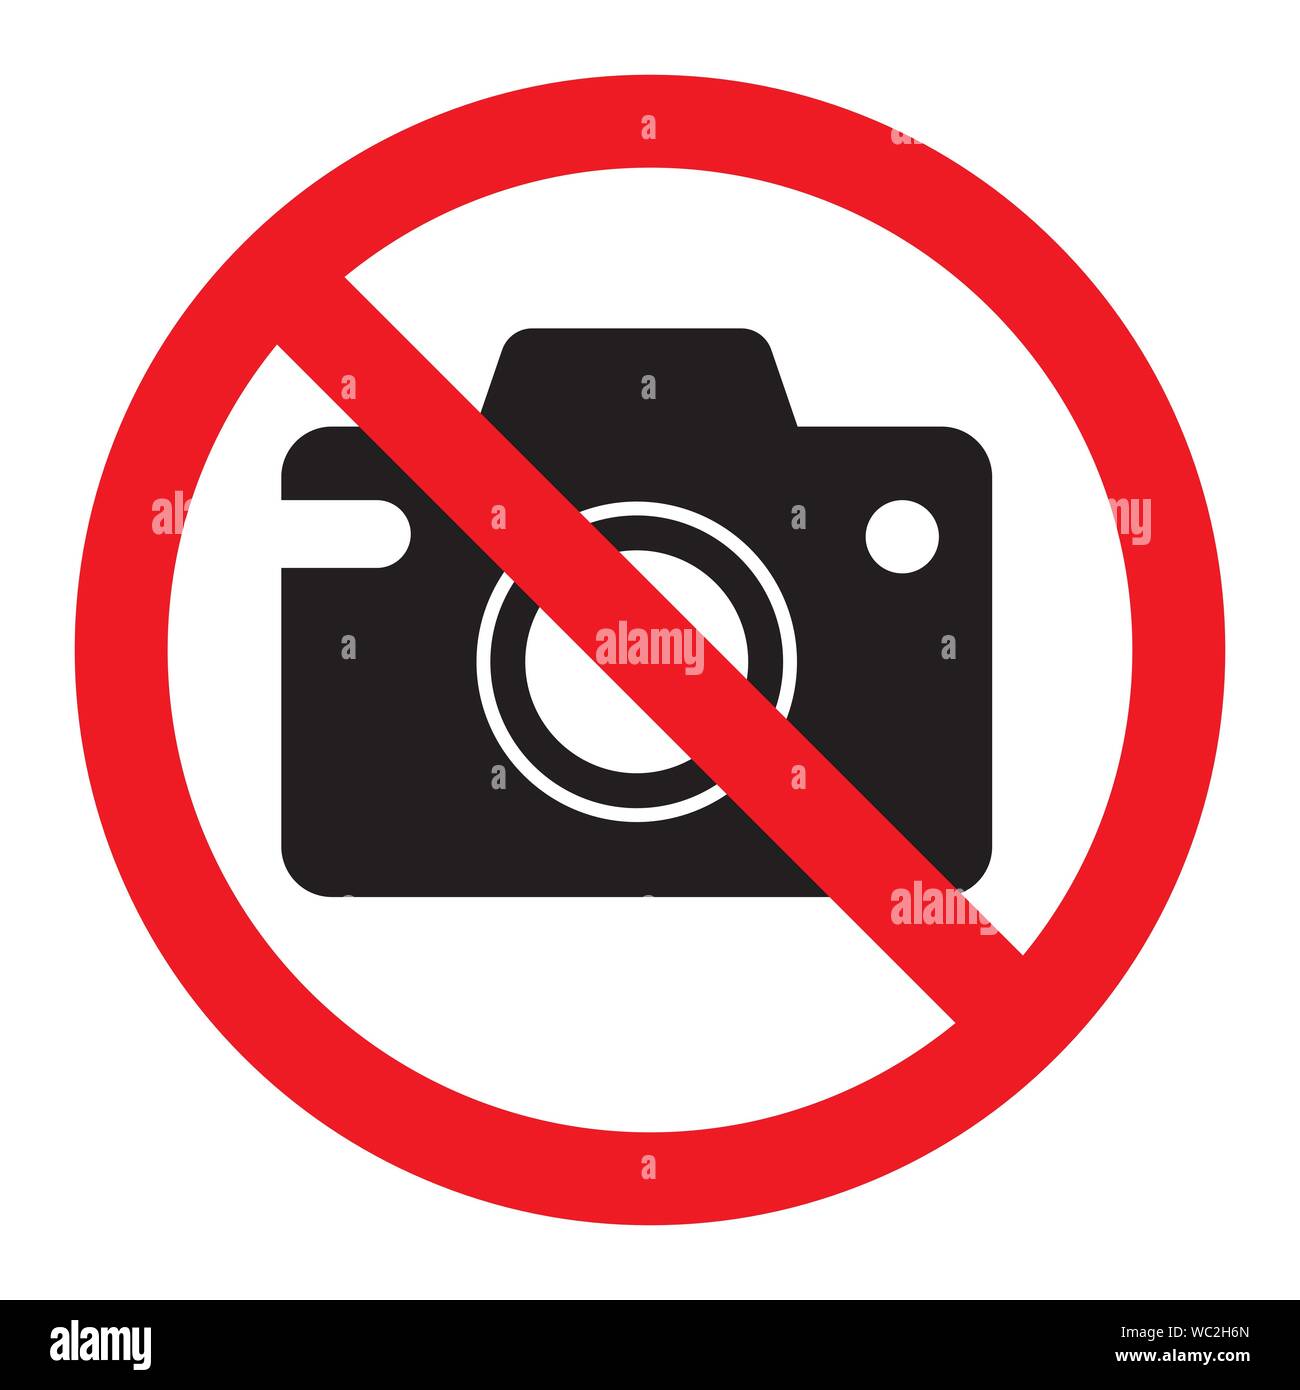 Verbot der Zeichen foto video Fotografieren verboten ist, Vektor kein Foto, Warnzeichen nicht zu schießen, roter Kreis durchgestrichen Kamera. Isolierte Abbildung Stock Vektor